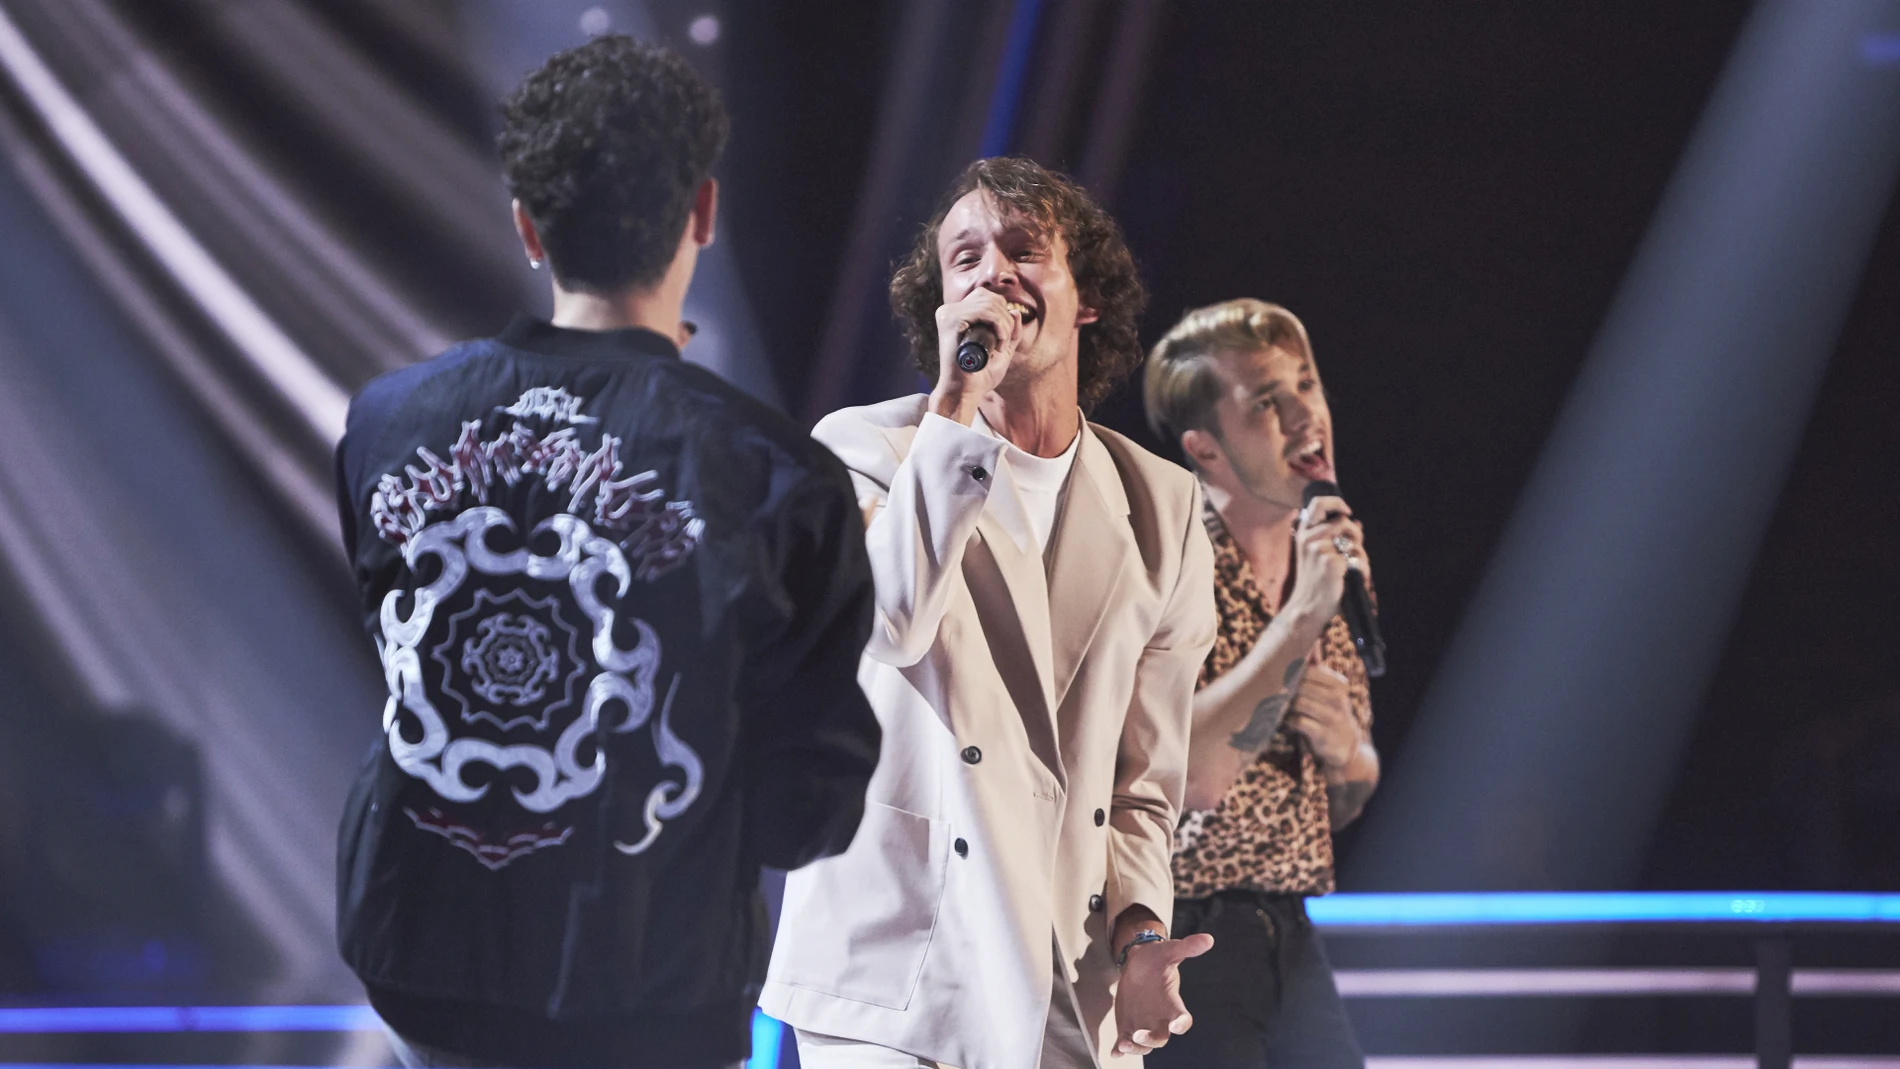 Antón, Álex y Javier enamoran en ‘La Voz’ cantando ‘Hold on’ de Justin Bieber